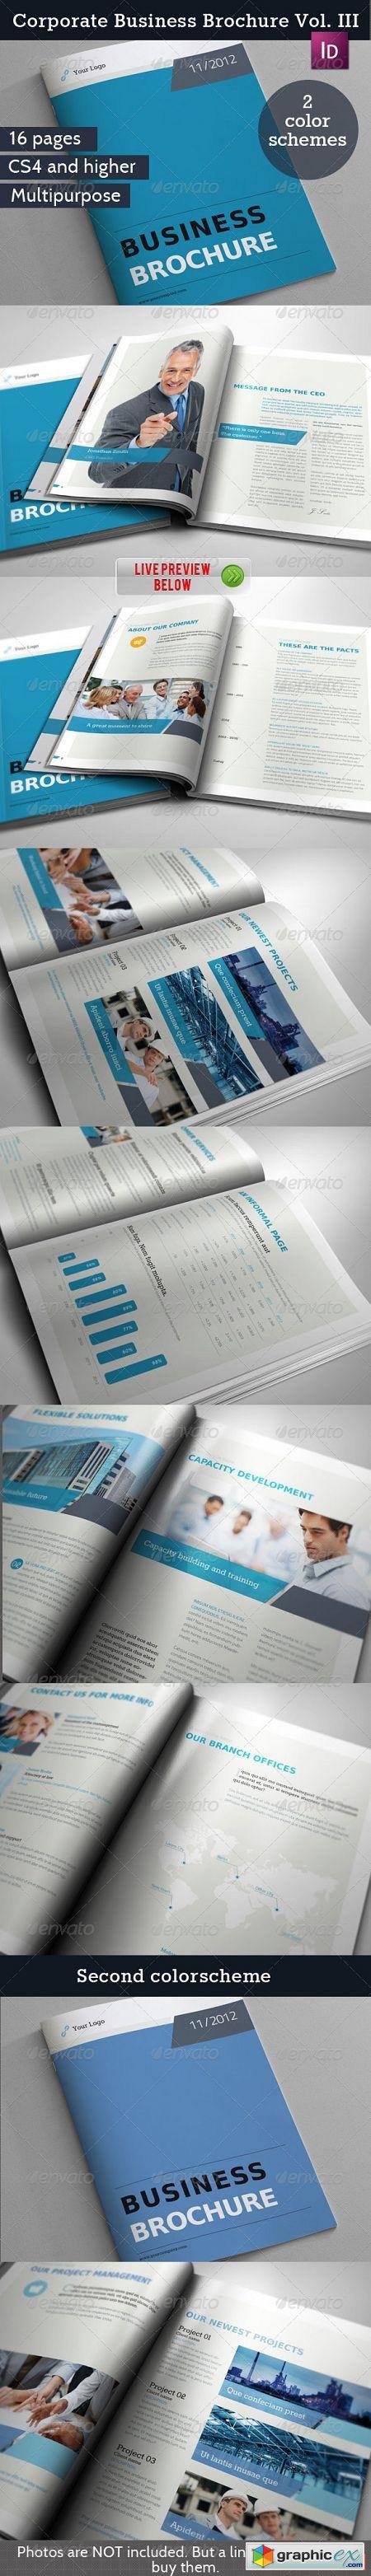 Corporate Business Brochure Vol. III